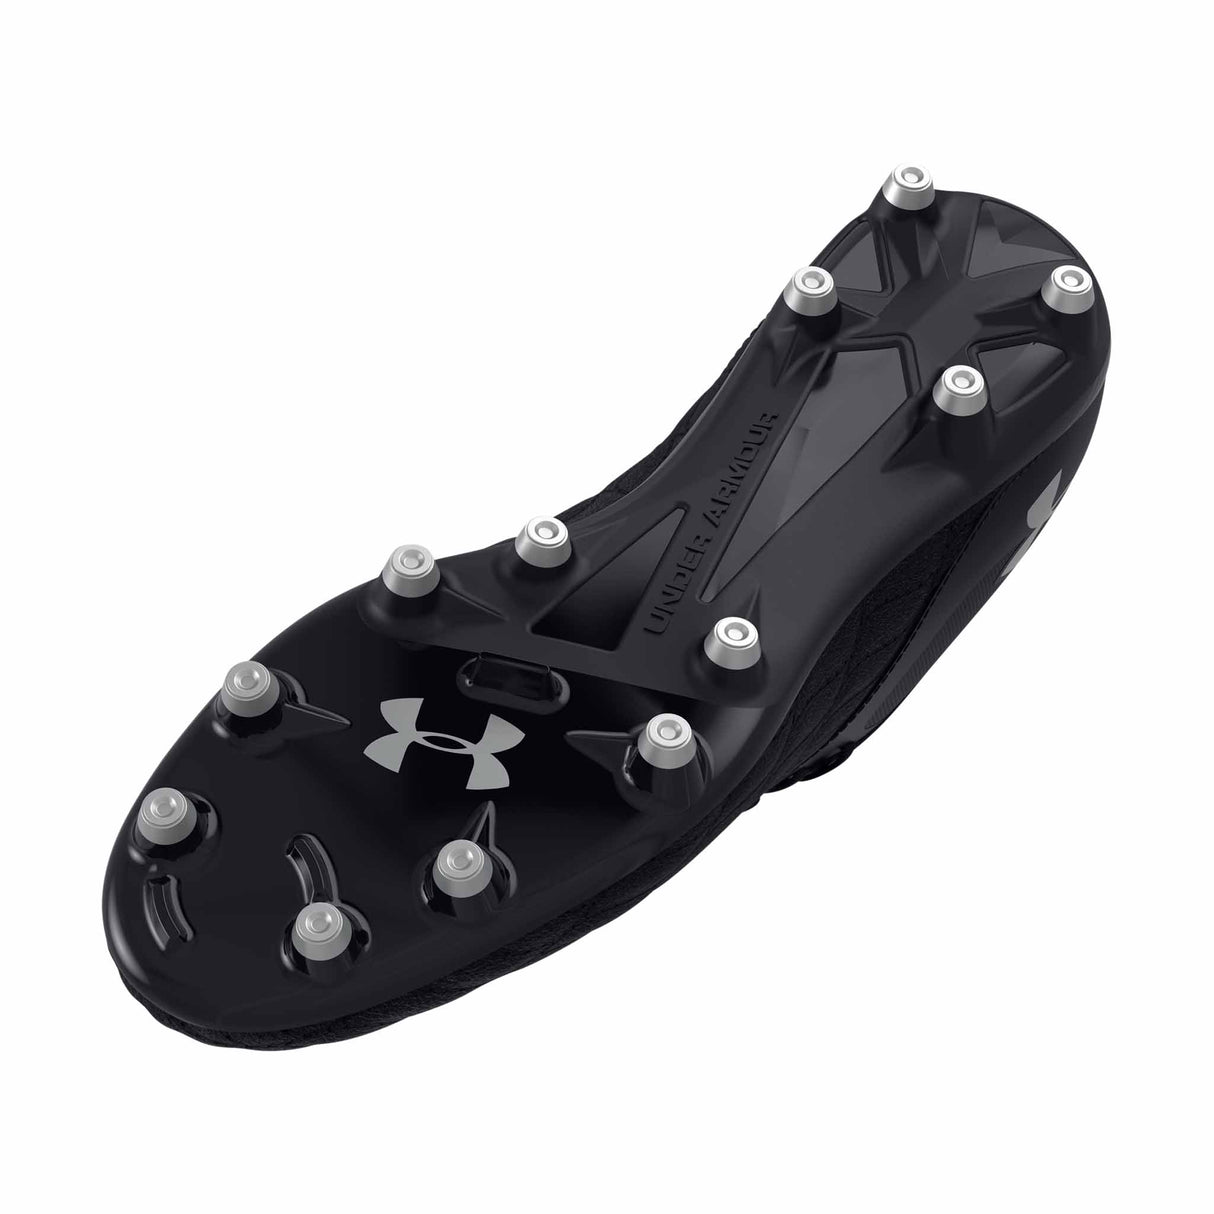 UA Magnetico Select 3.0 FG chaussures de soccer adulte crampons- noir / noir / argent métallique